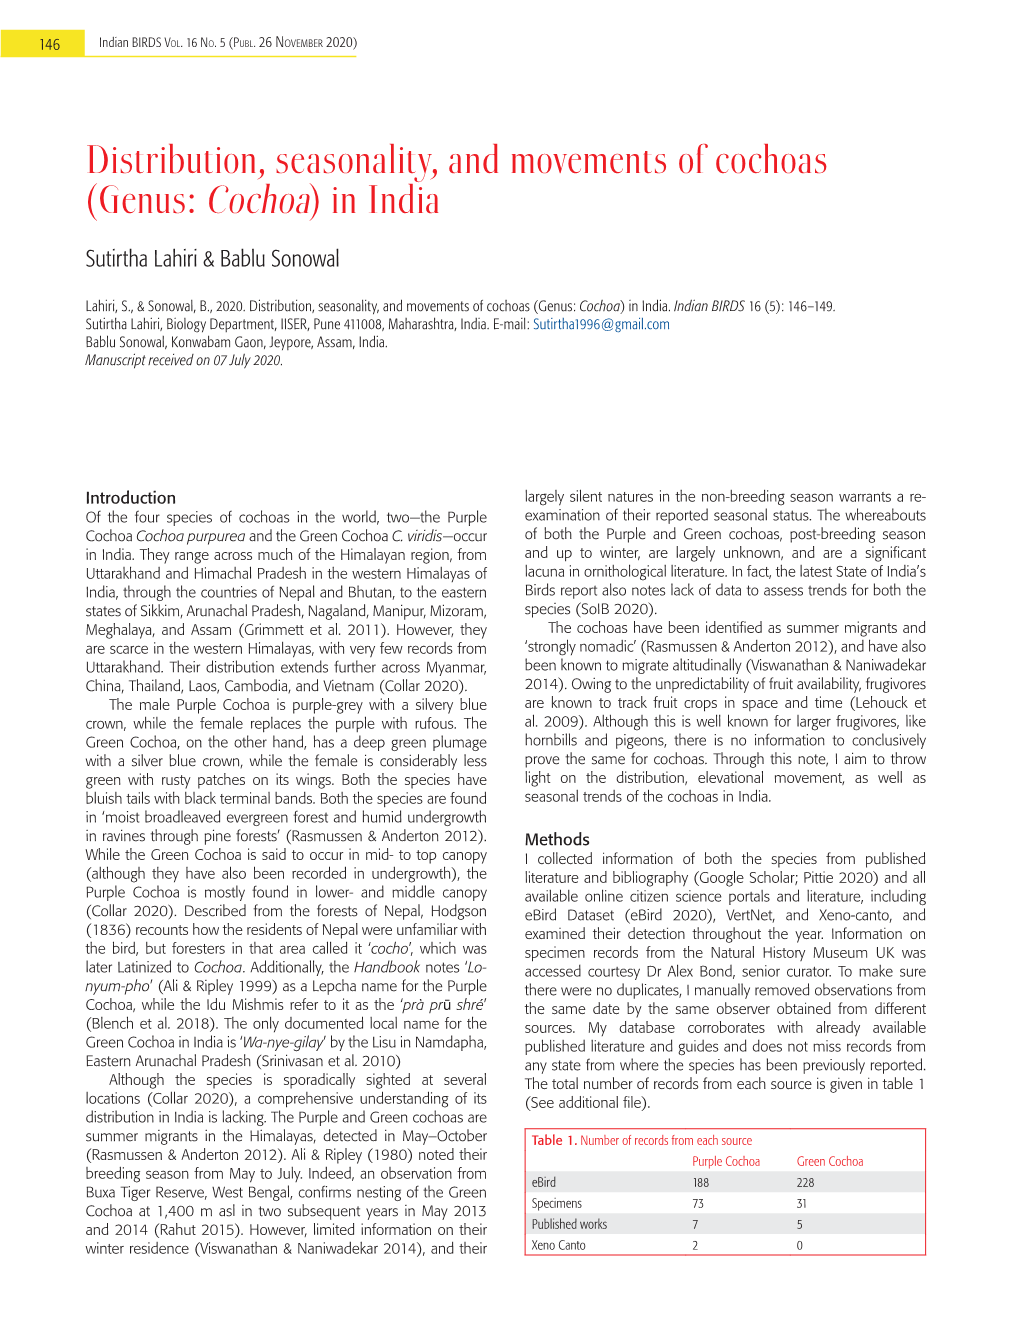 Genus: Cochoa) in India